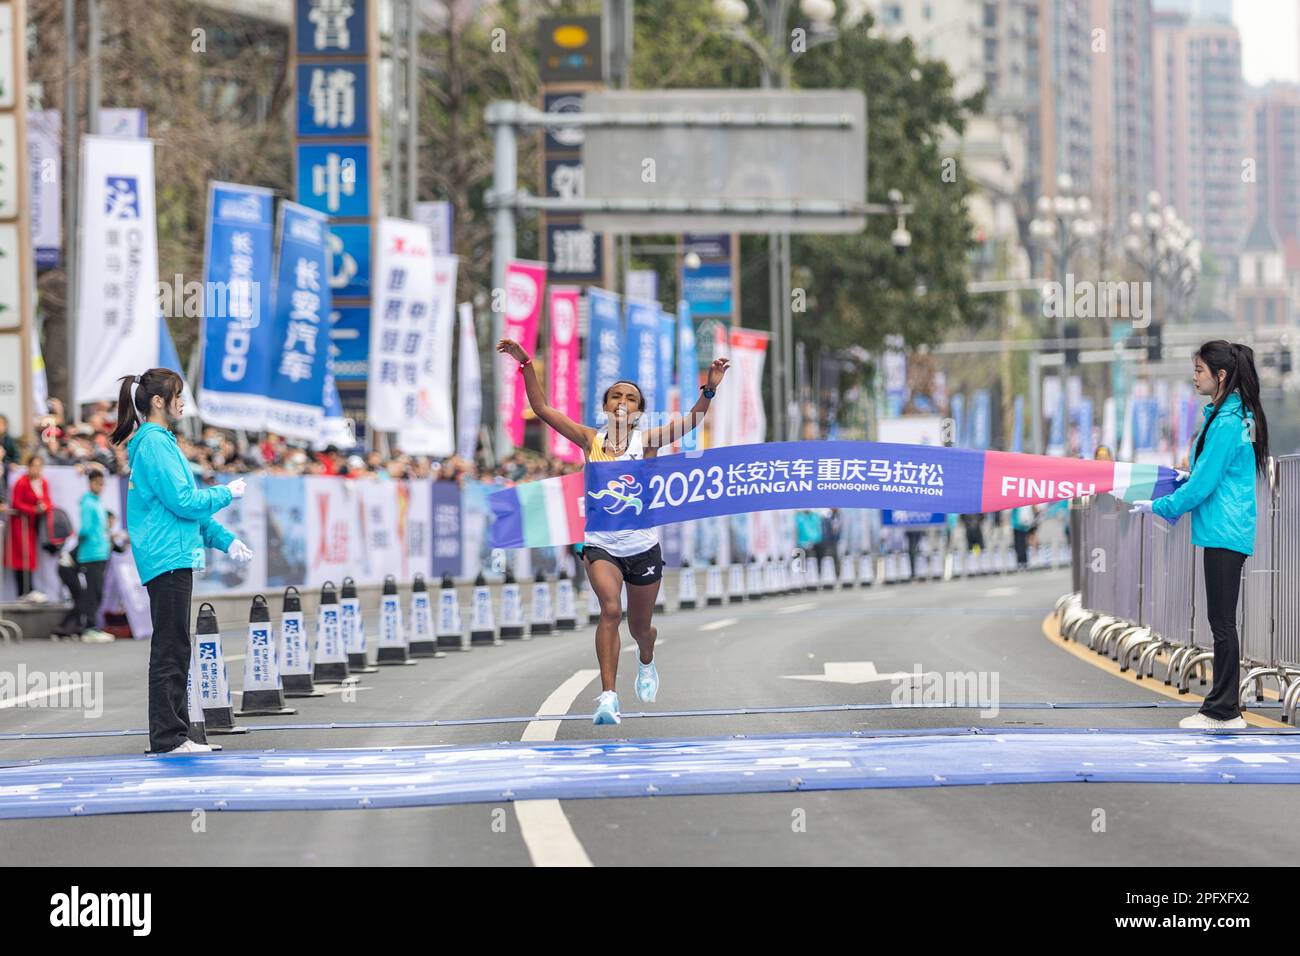 Chongqing. 19th Mar, 2023. Fantu Zewude Jifar (C) of Ethiopia crosses the finish line during the 2023 Chongqing Marathon in southwest China's Chongqing Municipality, March 19, 2023. Credit: Huang Wei/Xinhua/Alamy Live News Stock Photo